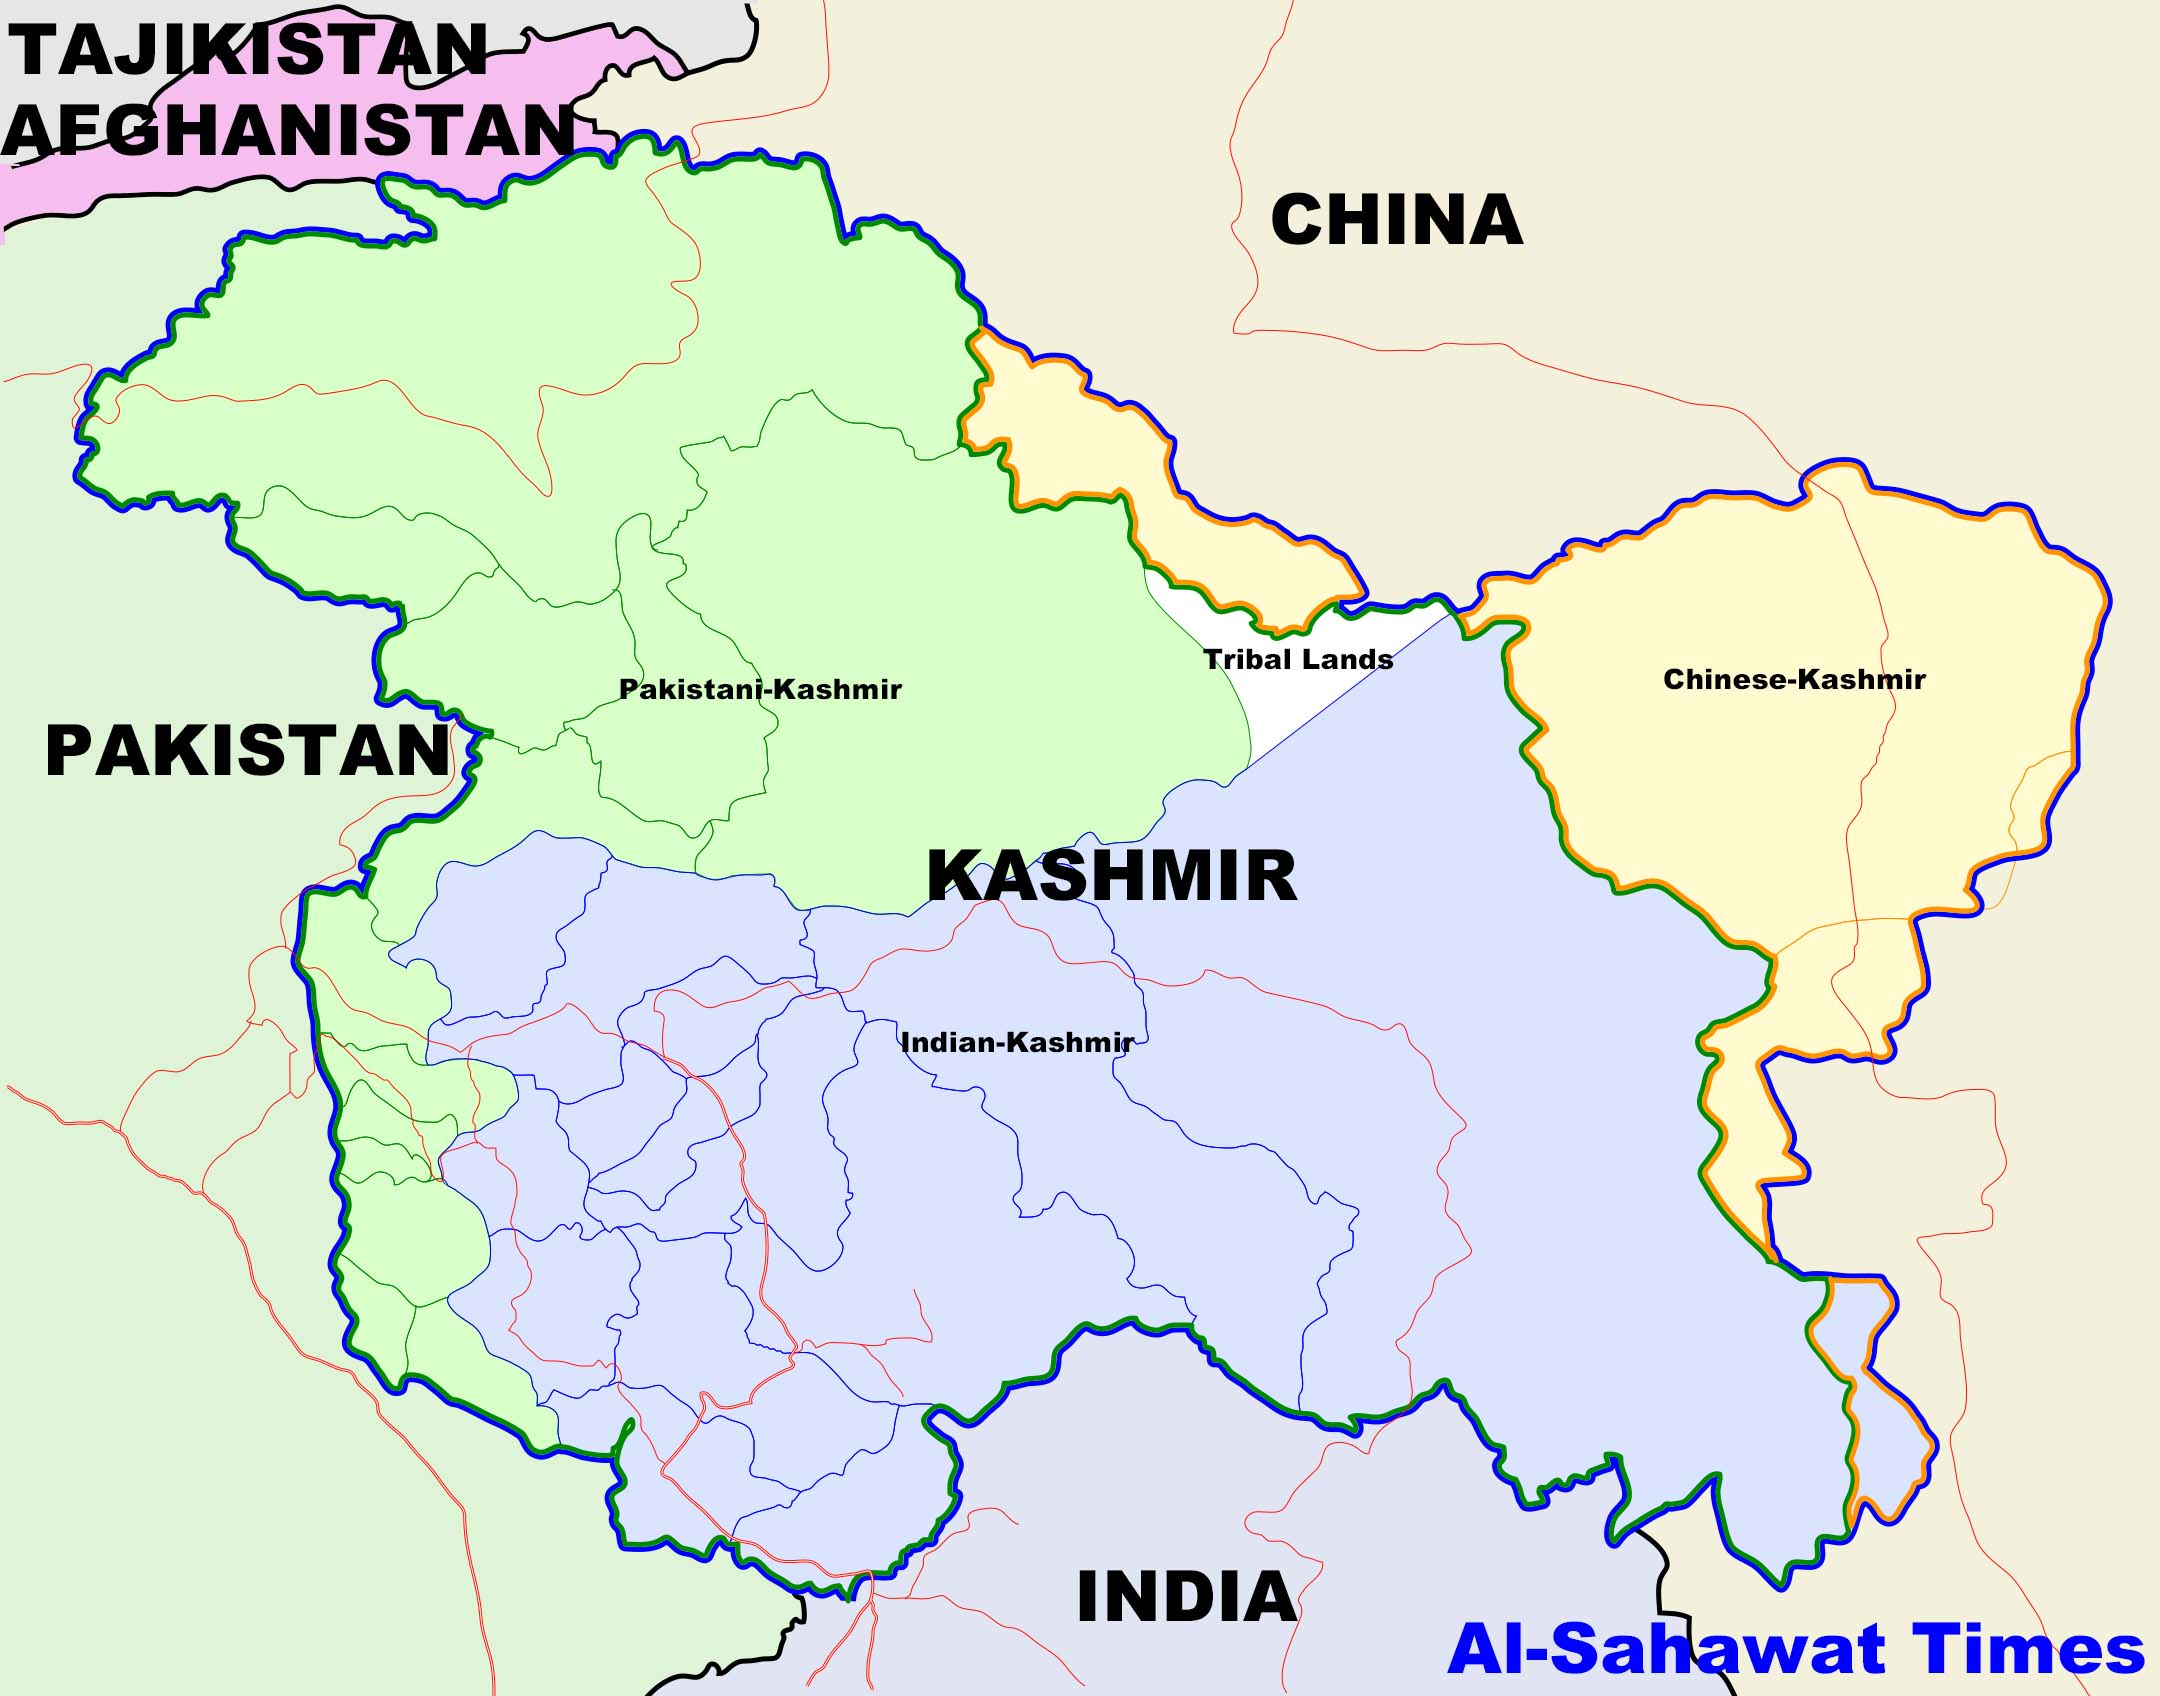 Al-Sahawat times - Kashmir Map